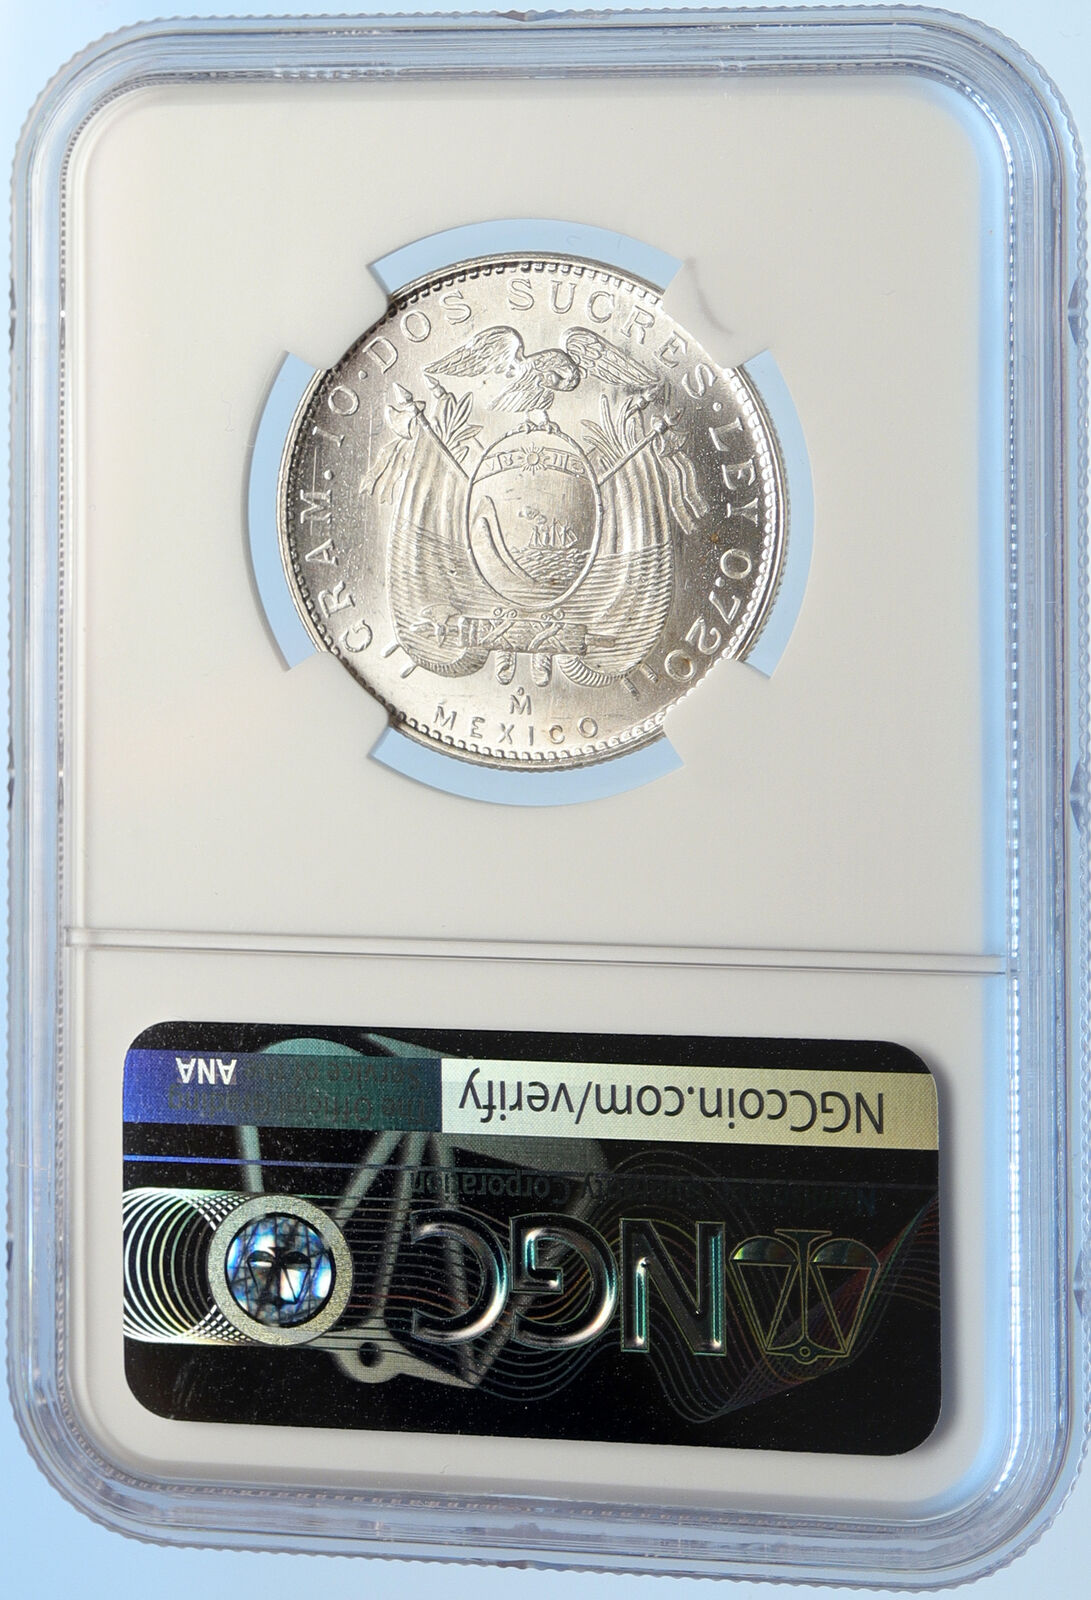 1944 Mo ECUADOR Antonio Jose de Sucre y Alcala Silver 2 Sucres Coin NGC i97520